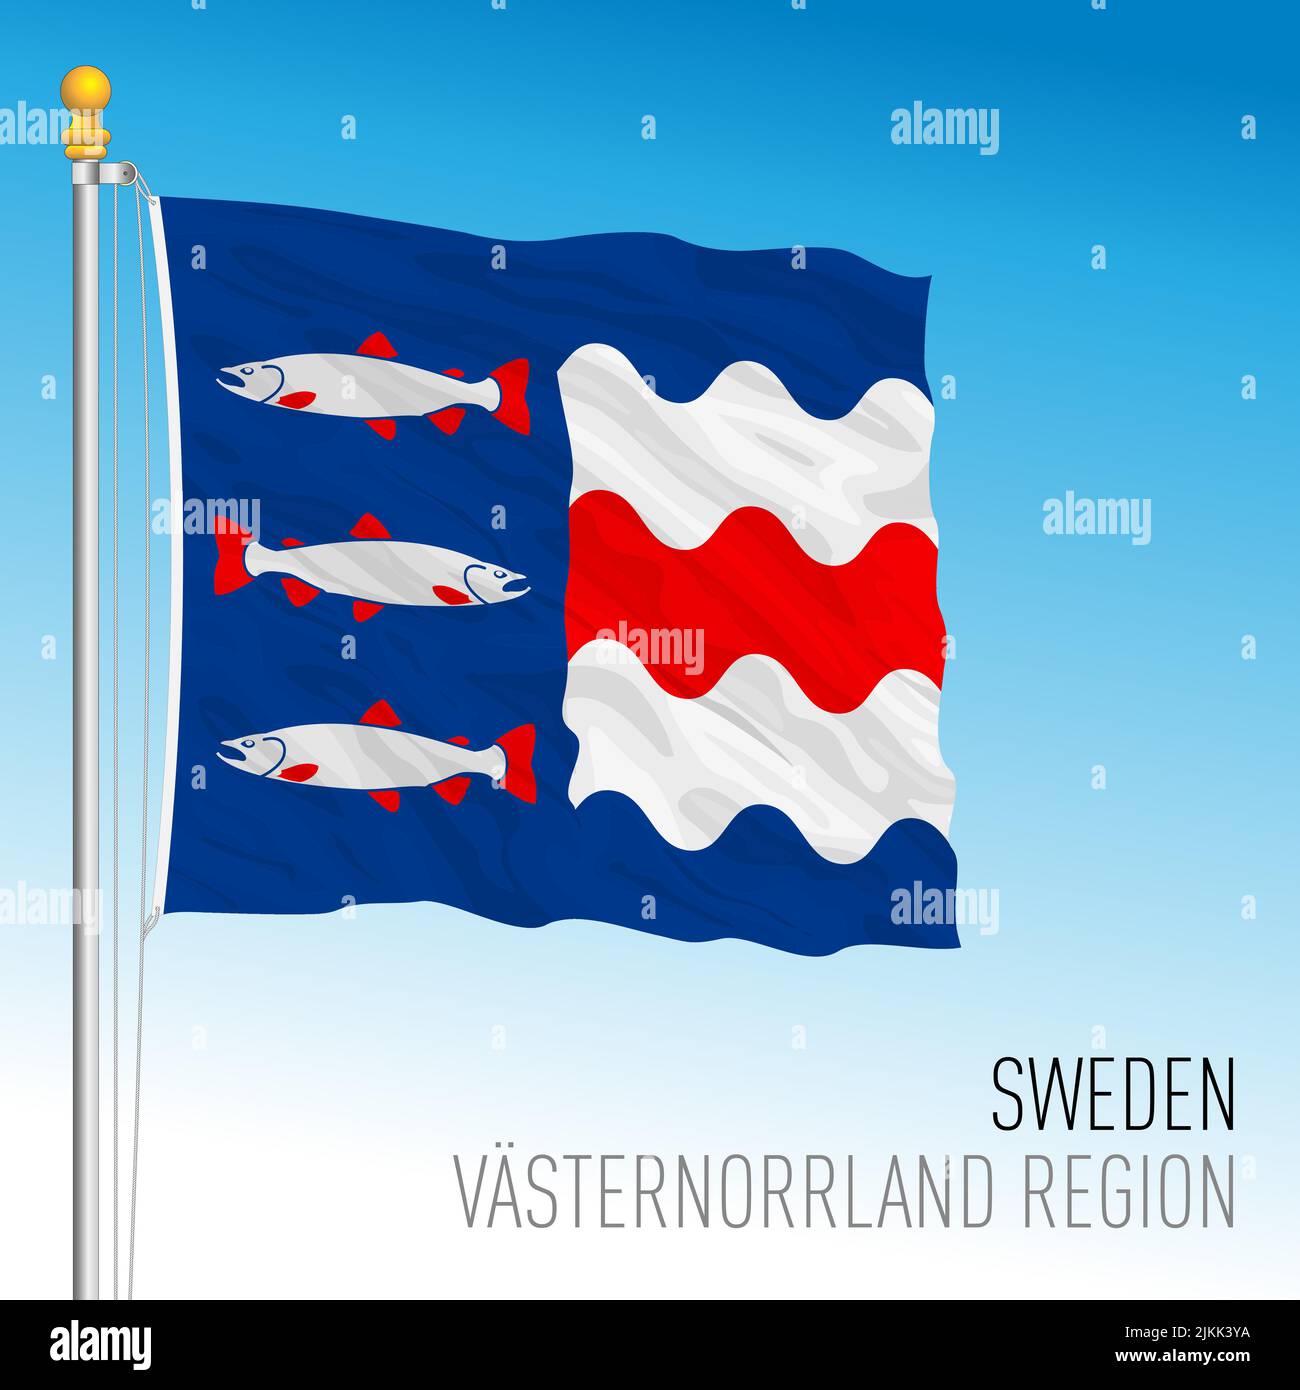 Bandera regional del condado de Vasternorrland, Reino de Suecia, ilustración de vectores Ilustración del Vector